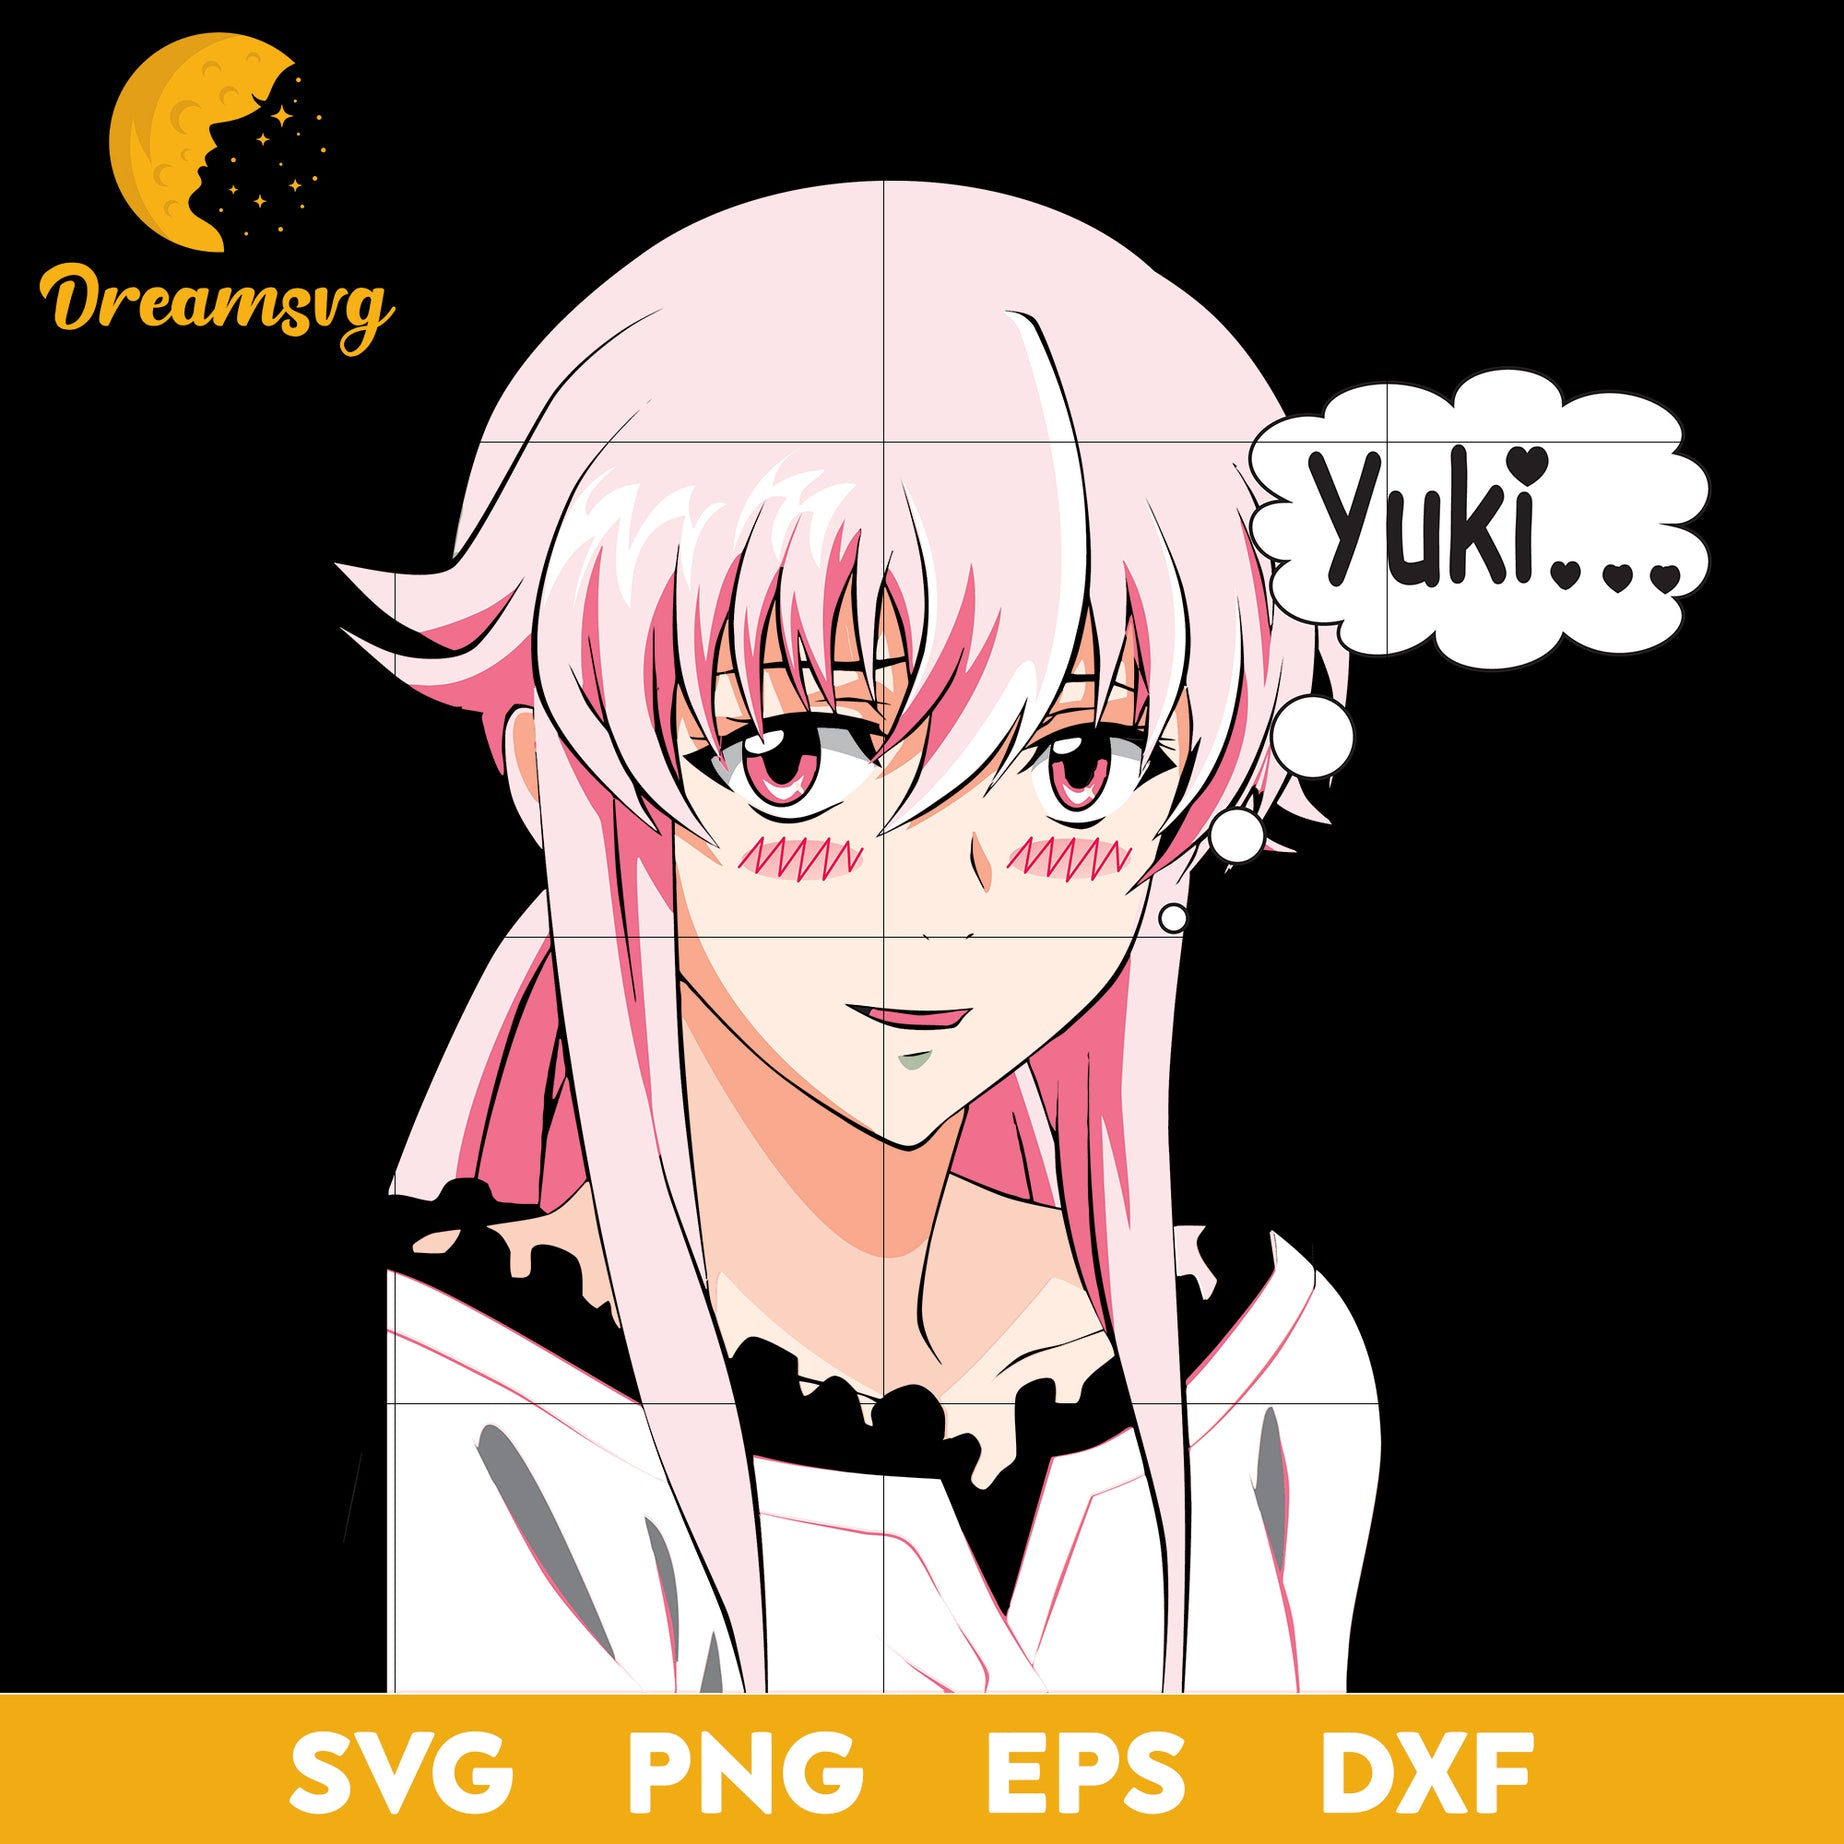 Yuno Gasai Svg, Mirai Nikki Gasai Yuno Svg, Yuki Svg, Anime Svg, Gasai Anime Svg, Love Anime Svg, png, eps, dxf digital download.